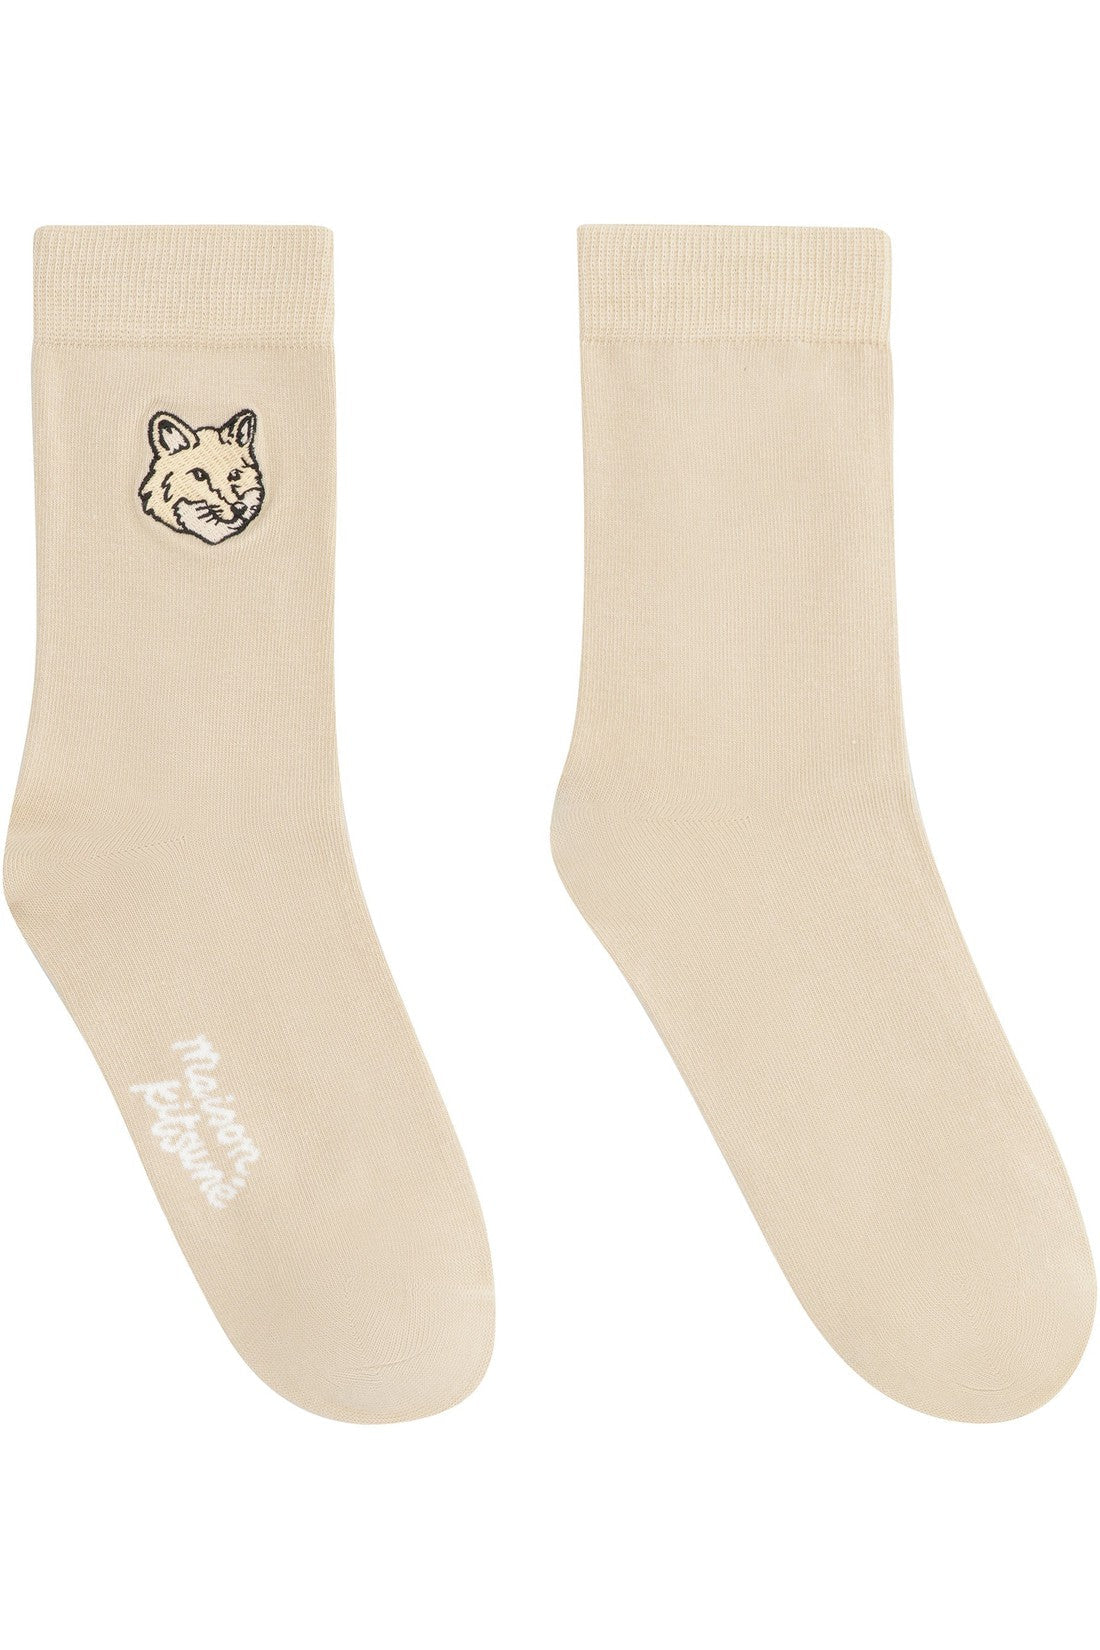 Maison Kitsuné-OUTLET-SALE-Cotton socks with logo-ARCHIVIST